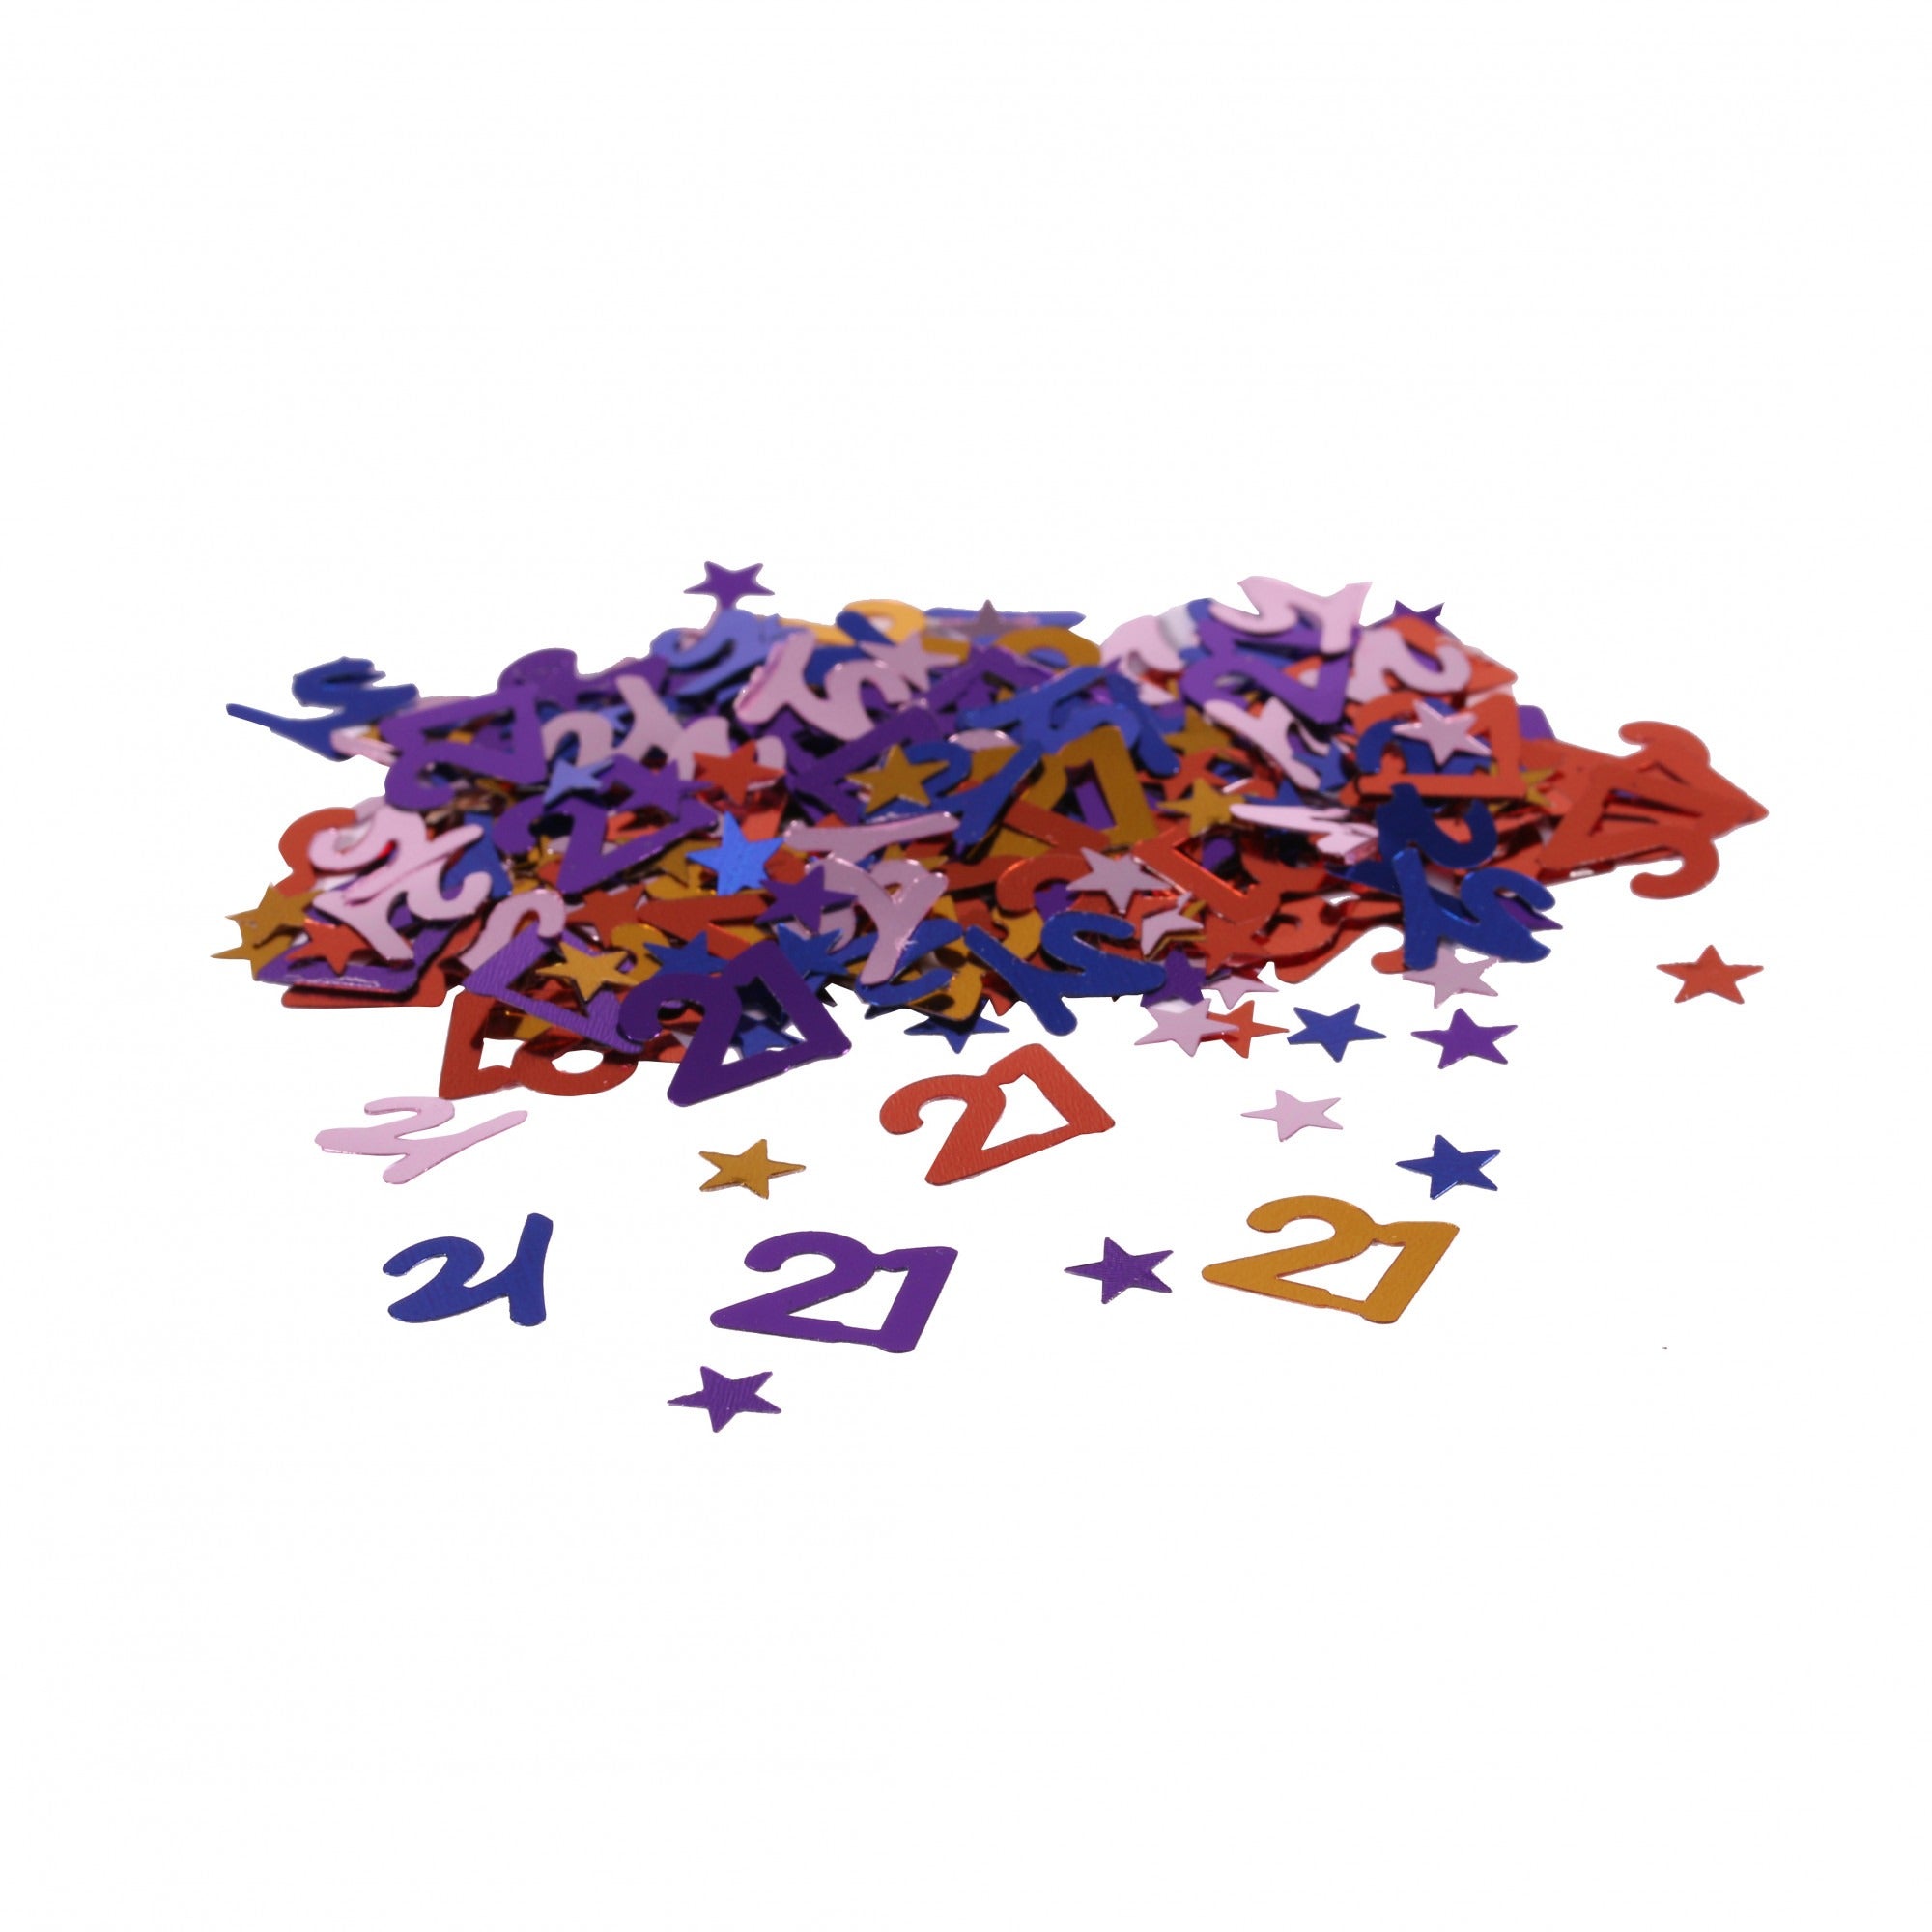 View Mini Stars 21 Confetti Multi Coloured information